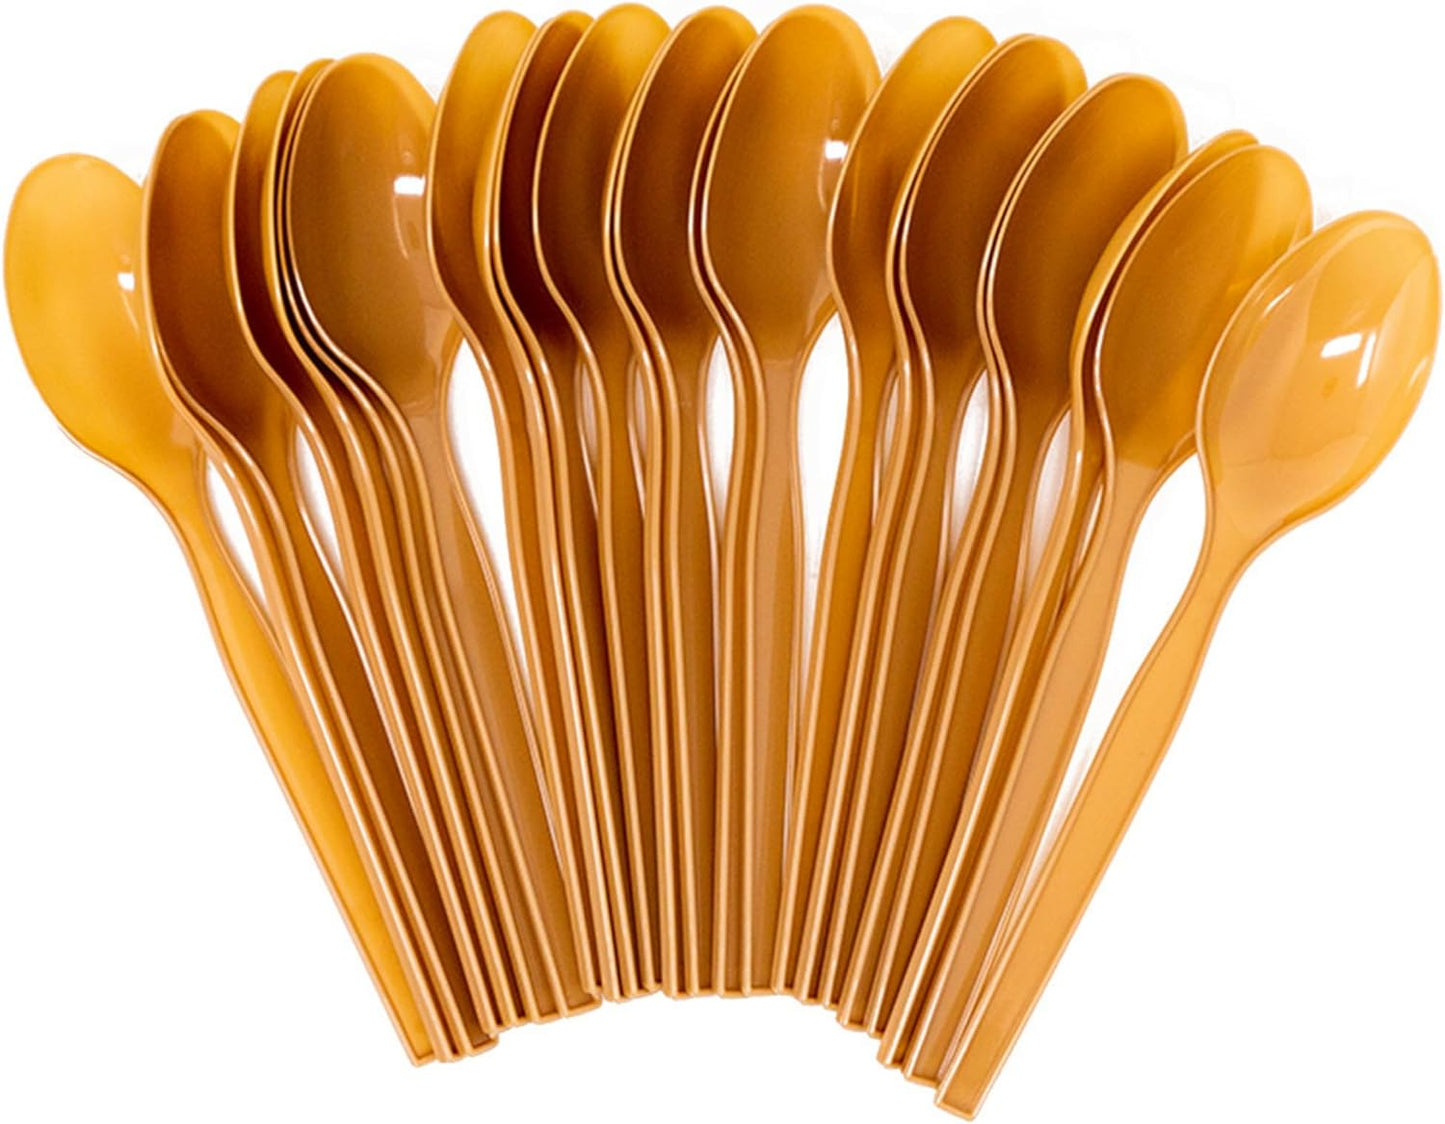 Brown Plastic Spoons 200 Packs (24 each)